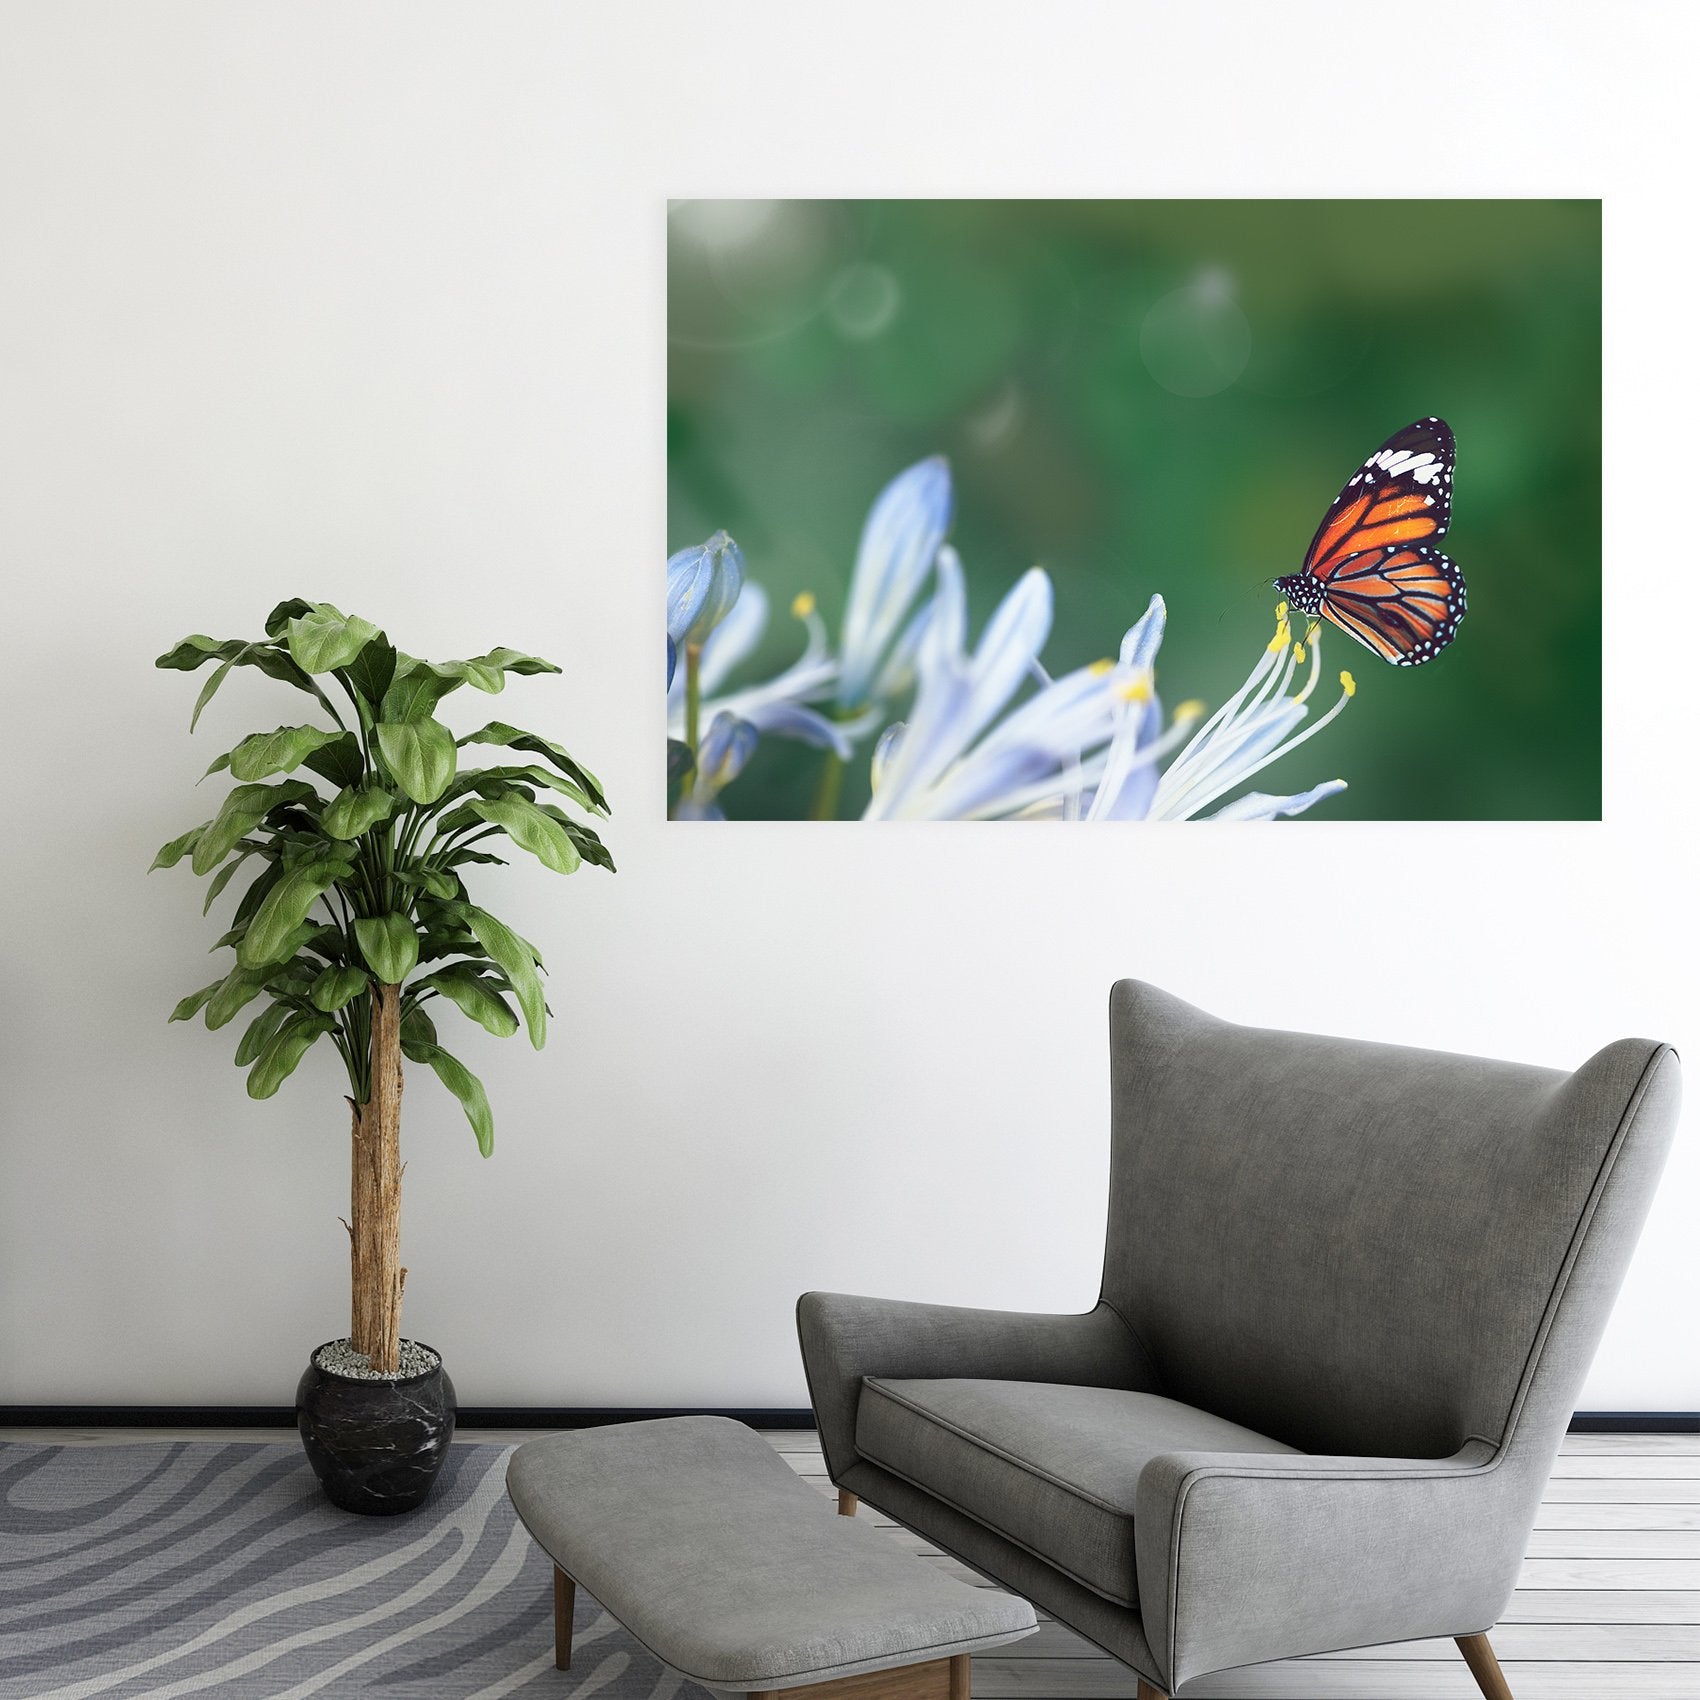 3D Flower Butterfly 60 Animal Wall Stickers Wallpaper AJ Wallpaper 2 